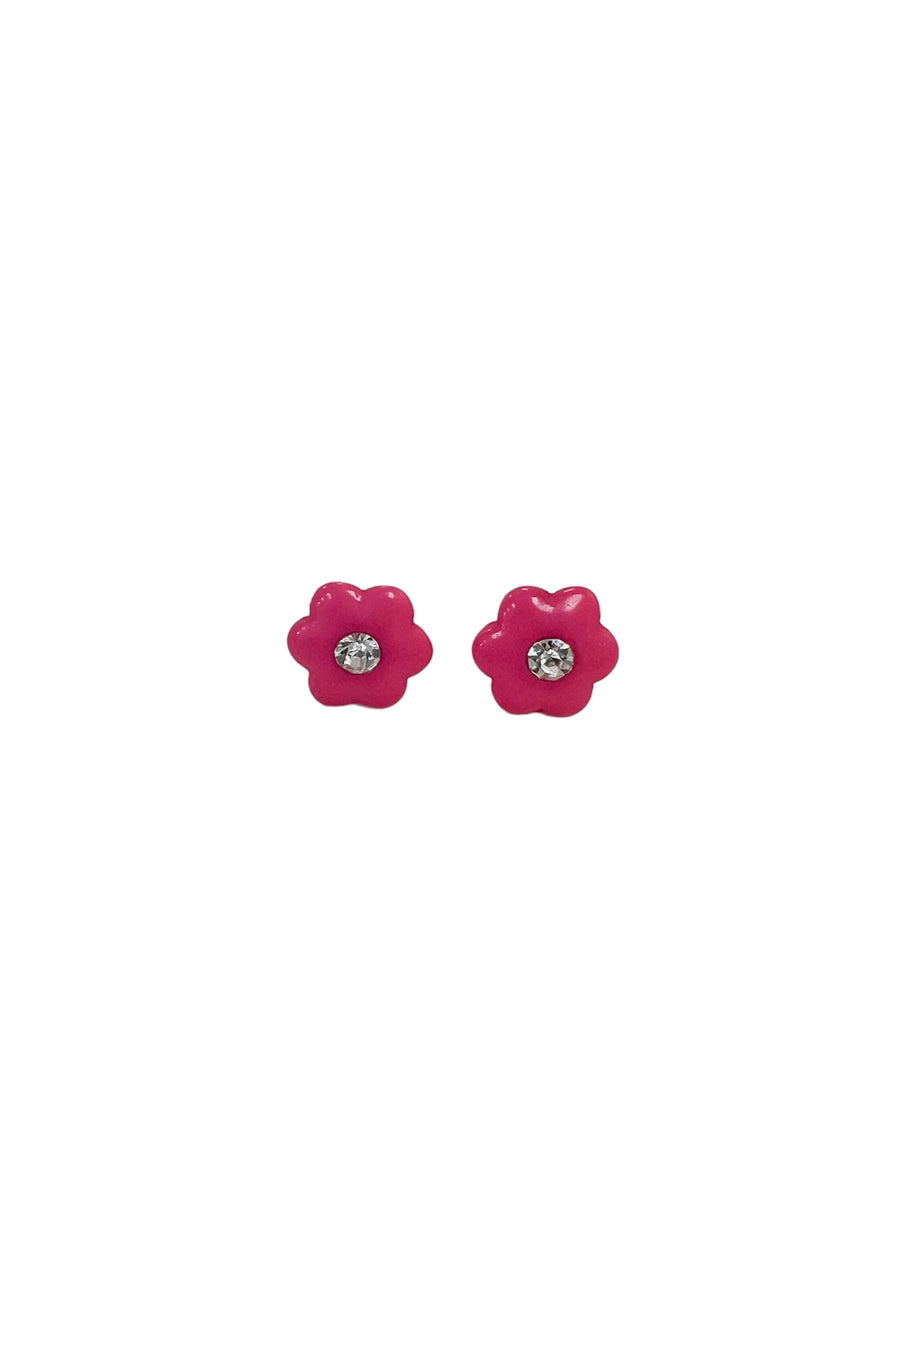 Enamel Flower Stud Earrings in Hot Pink